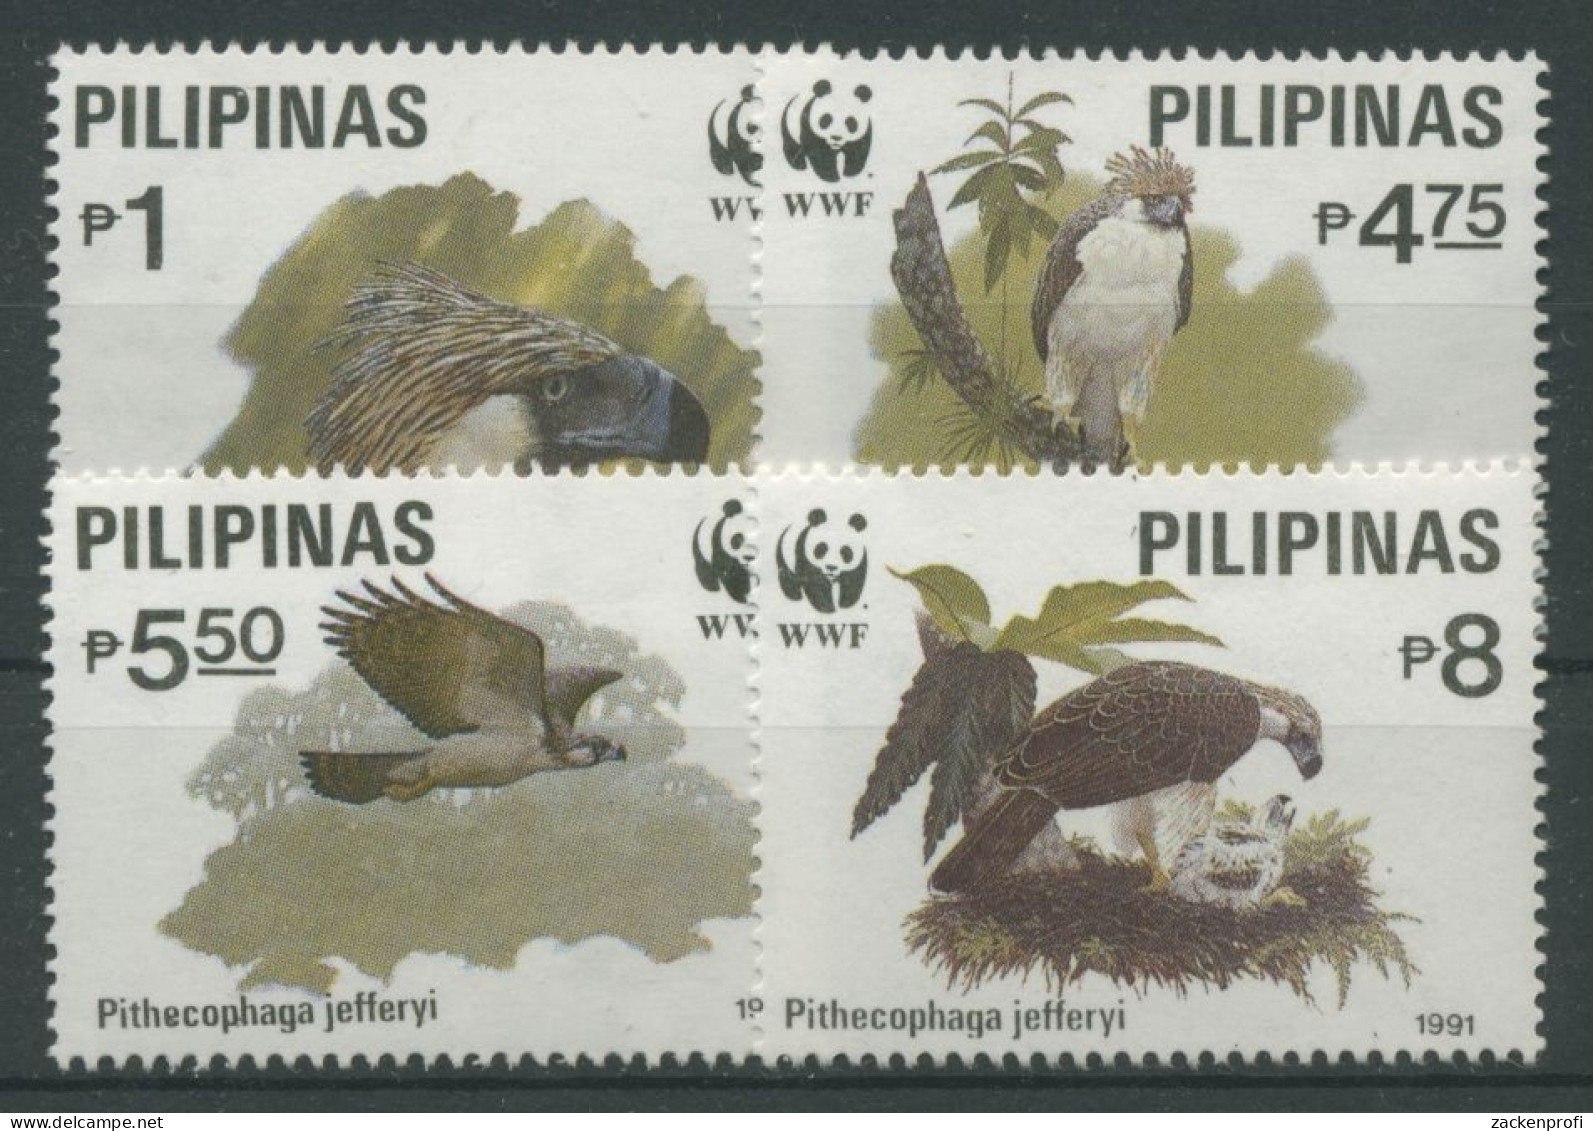 Philippinen 1991 WWF Tiere Vögel Affenadler 2038/41 Postfrisch - Filipinas